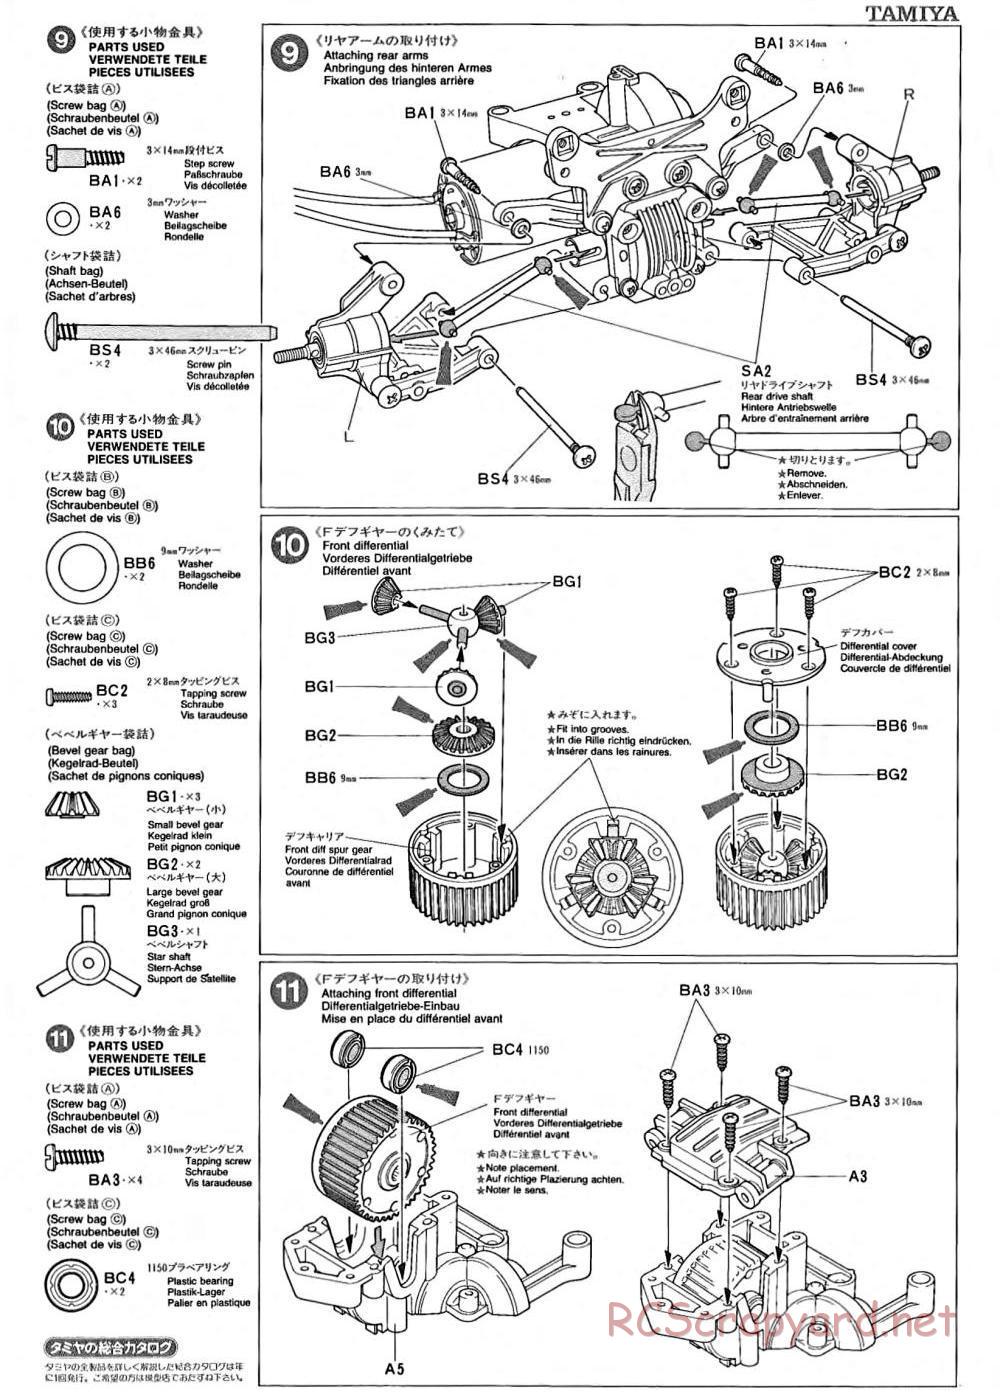 Tamiya - TA-02 Chassis - Manual - Page 4